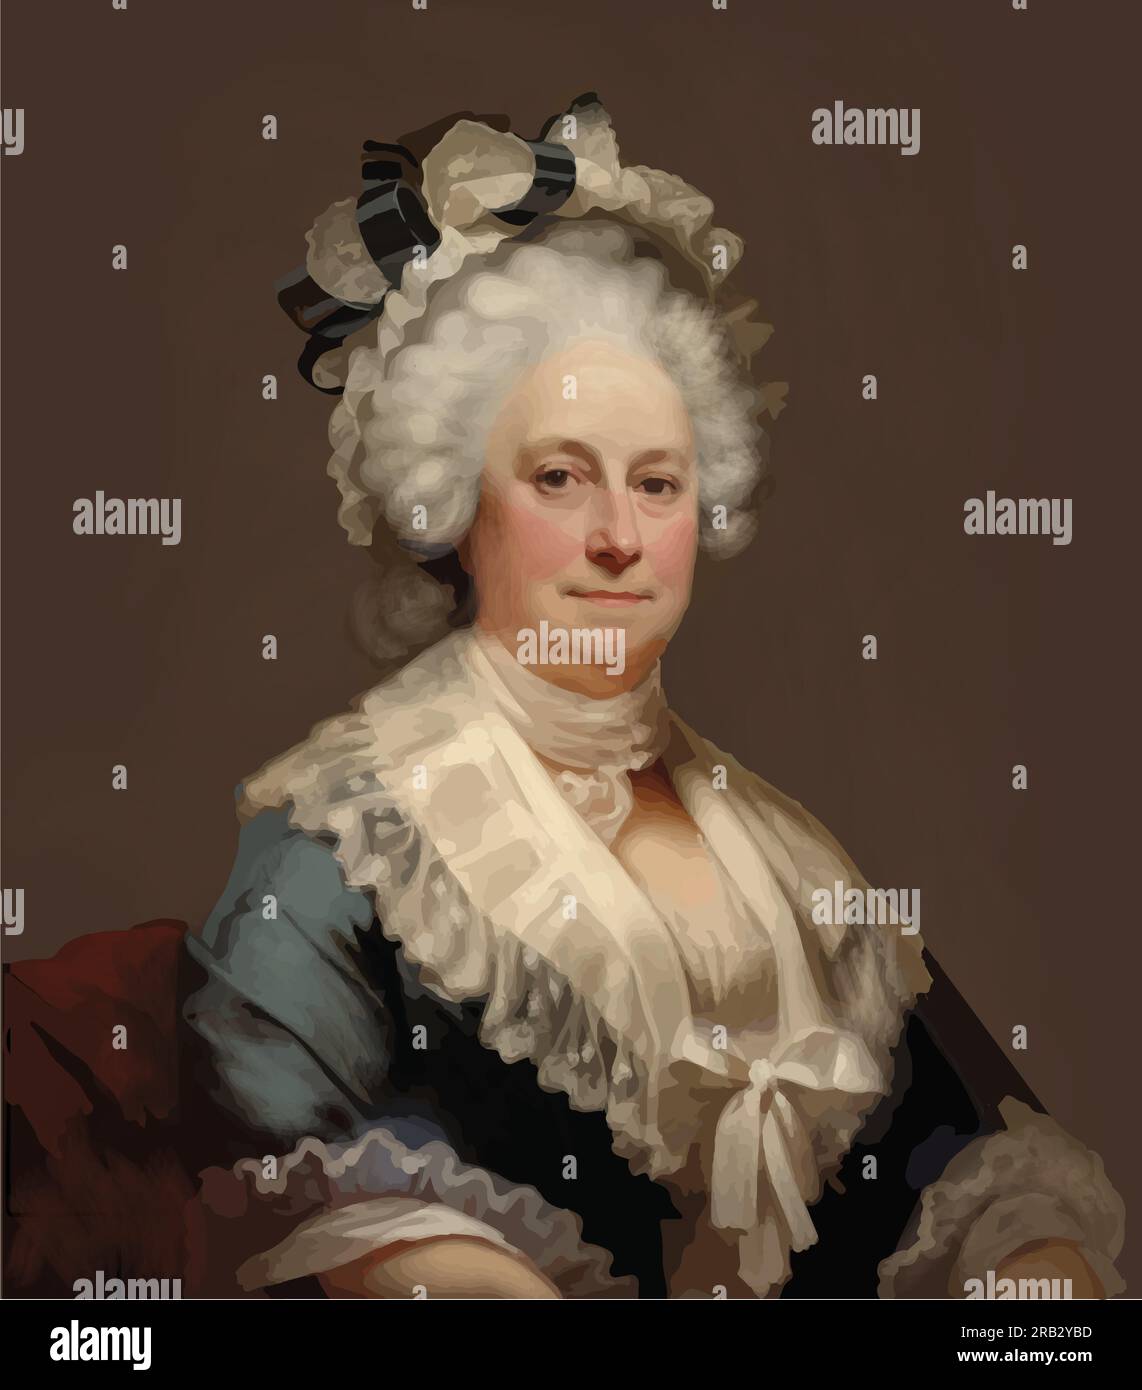 Vecteur de Martha Washington (1731-1802), épouse du premier président américain George Washington. Illustration de Vecteur